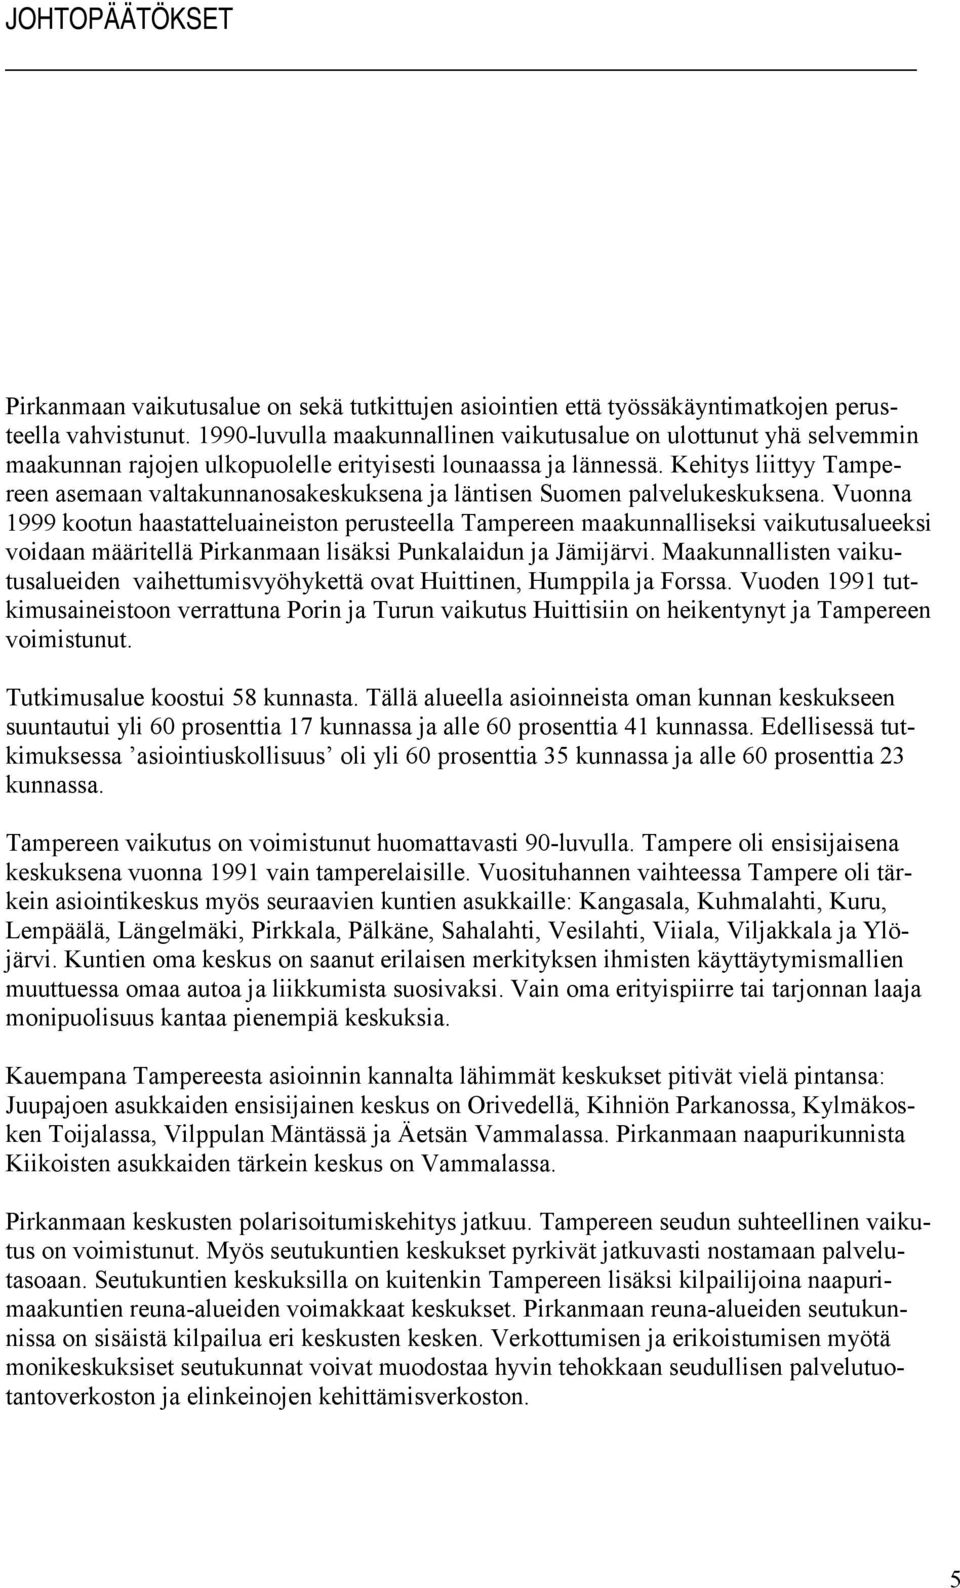 Kehitys liittyy Tampereen asemaan valtakunnanosakeskuksena ja läntisen Suomen palvelukeskuksena.